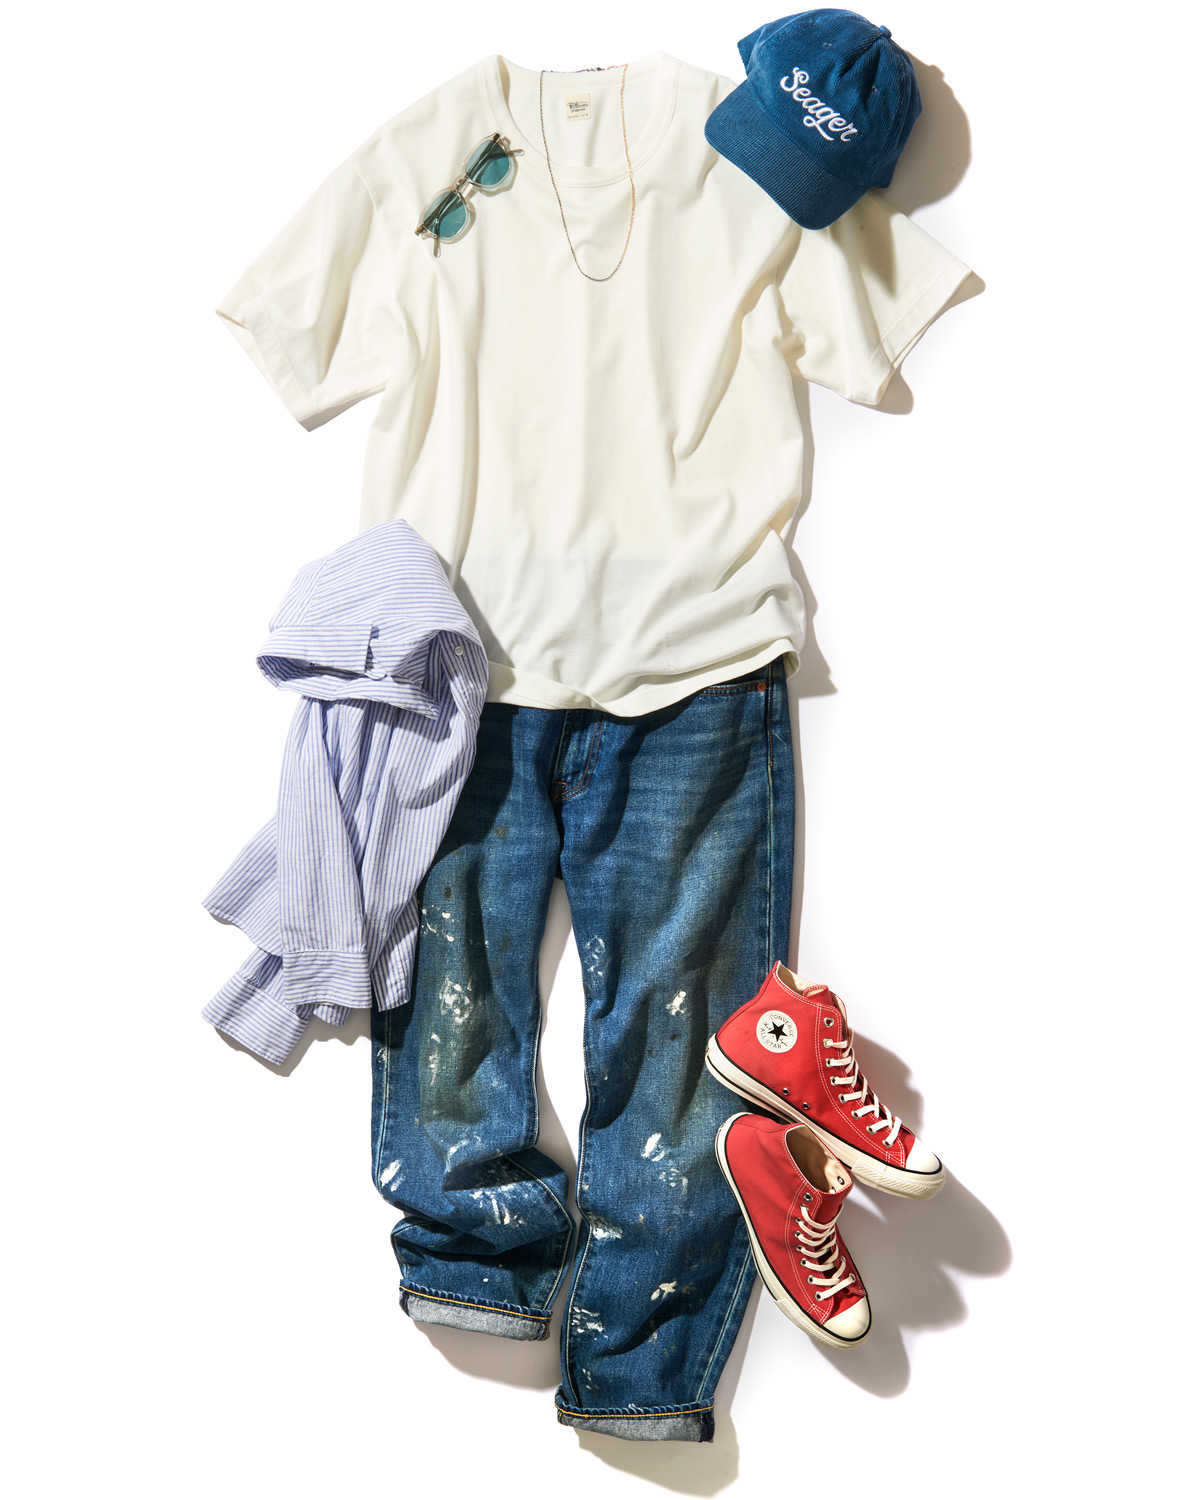 0円 大きな取引 Safari サファリ 2006年06月号 デニムスタイルをランクアップする靴選びの掟 大人に似合うTシャツの証明 中古 美品